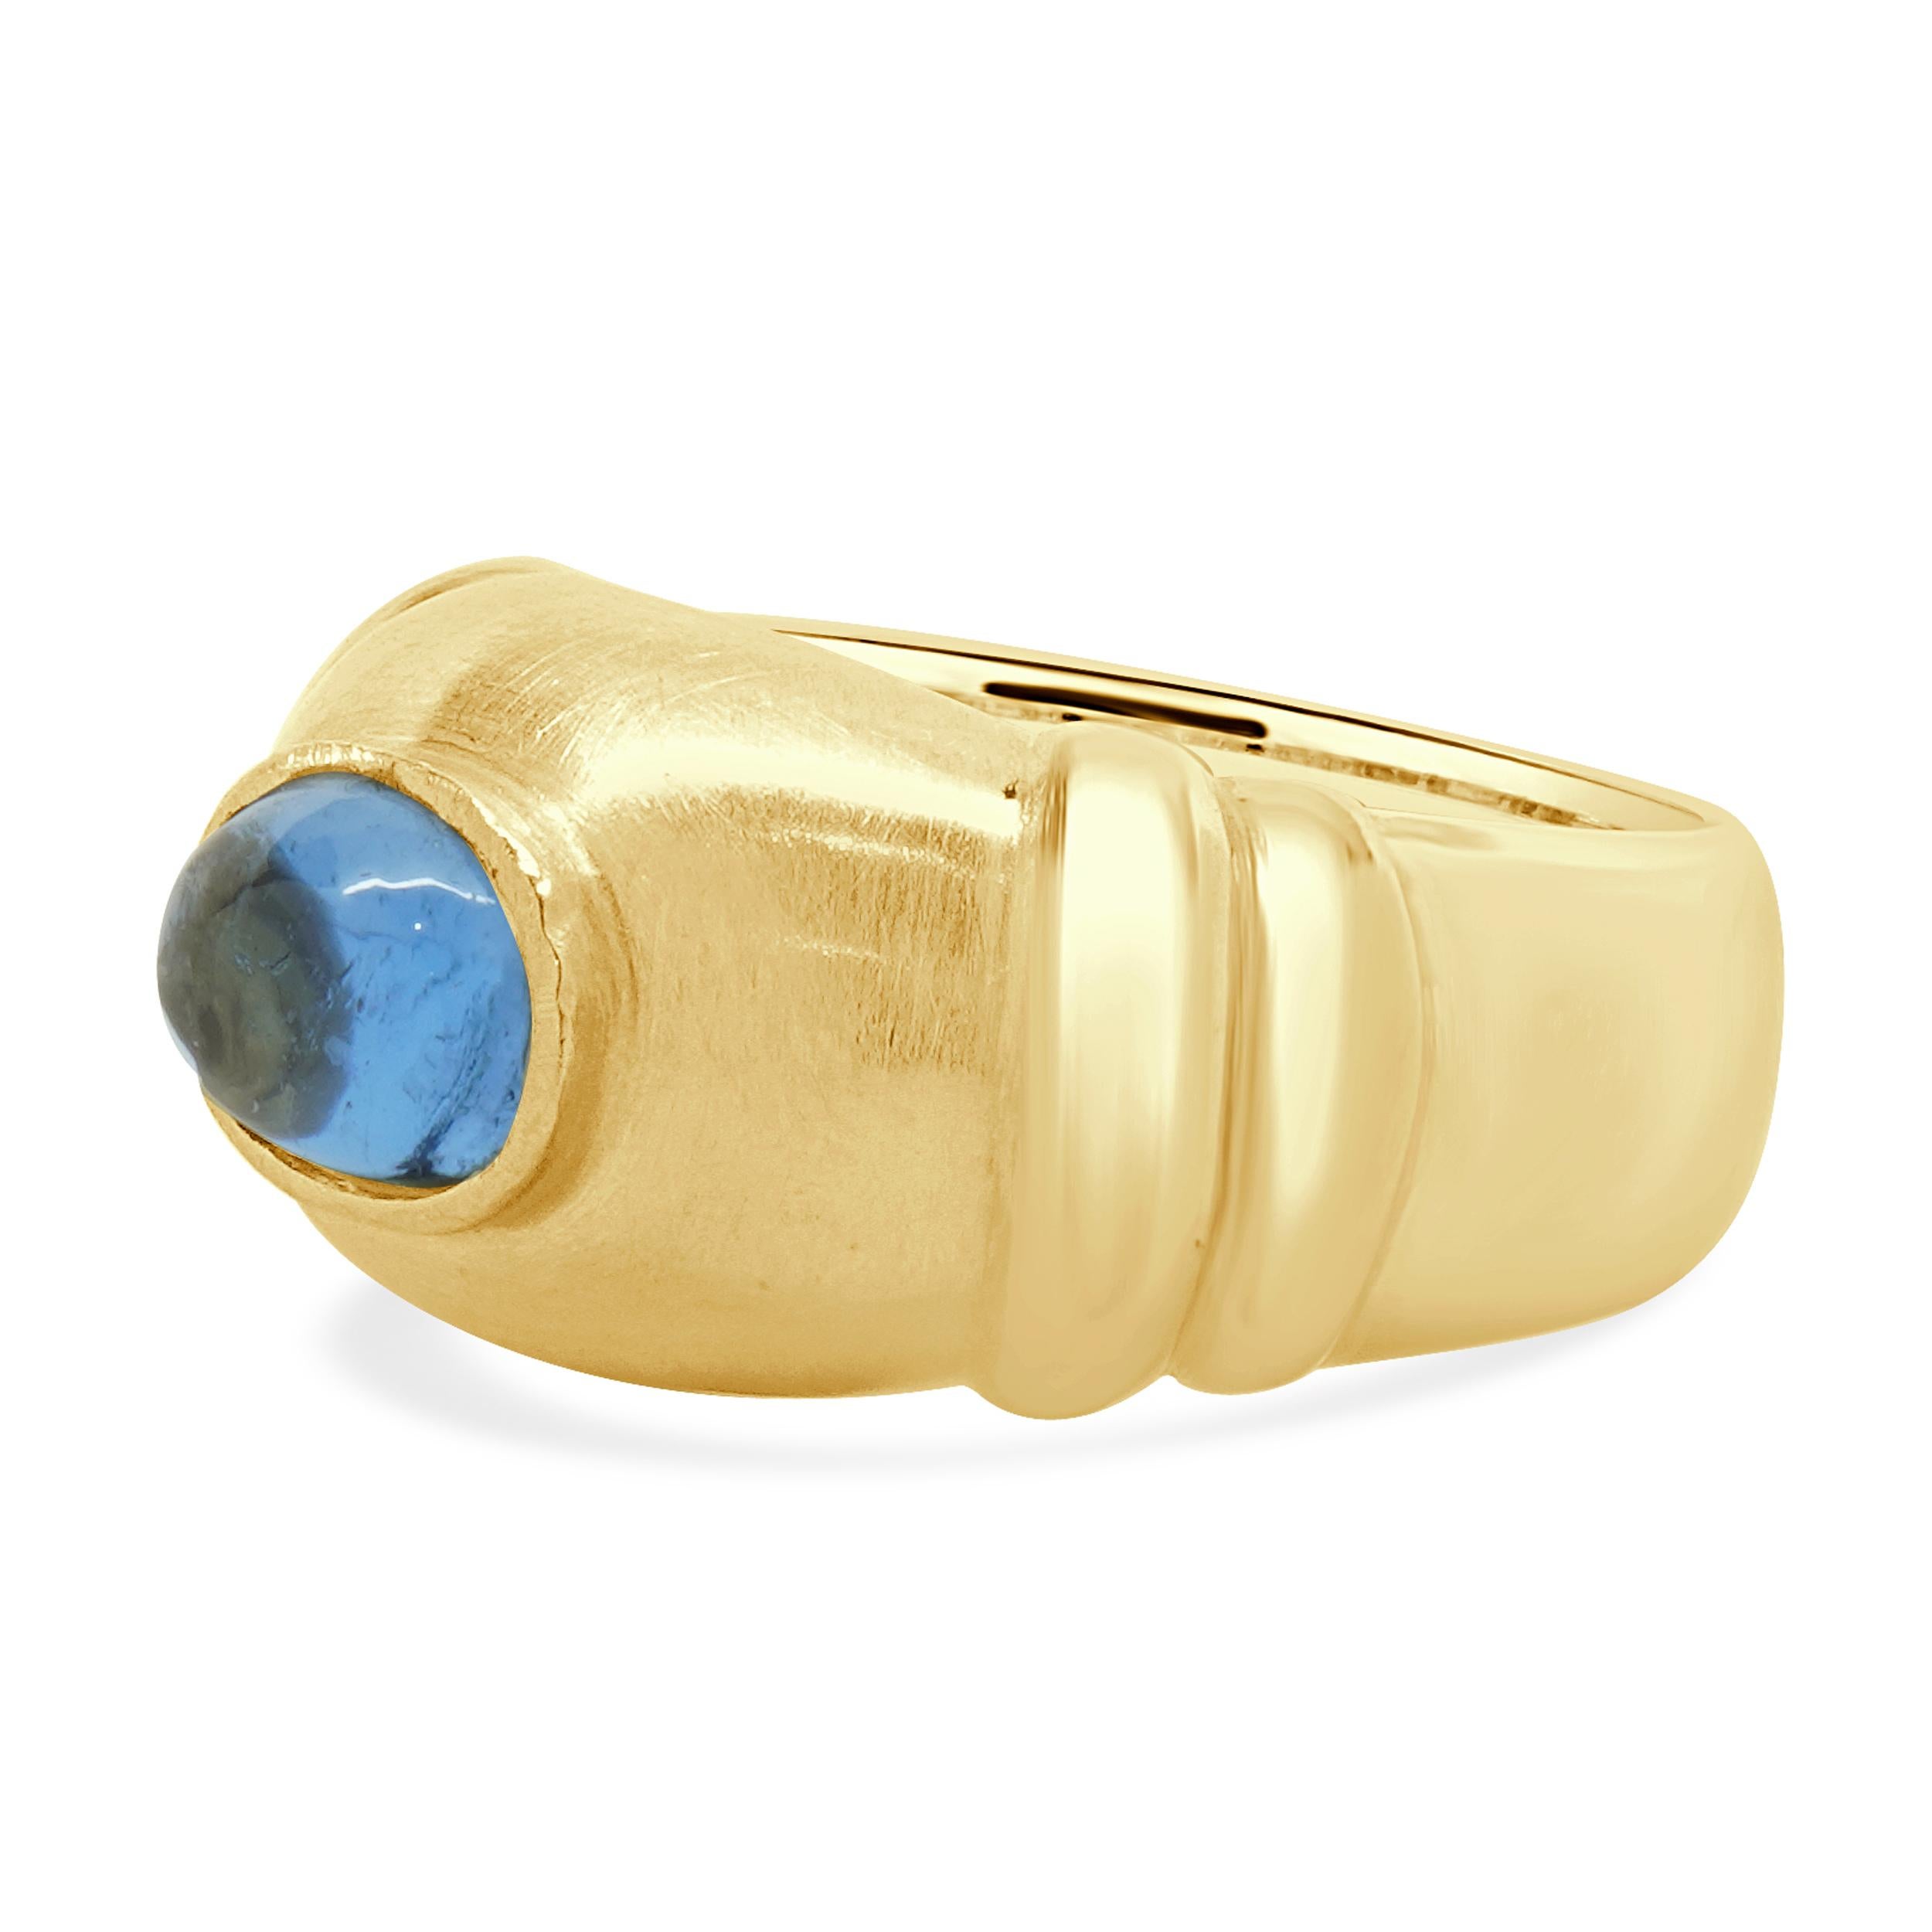 Matériau : Or jaune 18K
Topaze bleue : 1 cabochon taillé = 0,60ct
Taille de l'anneau : 4,5 (veuillez prévoir jusqu'à 2 jours ouvrables supplémentaires pour les demandes de taille)
Dimensions : la partie supérieure de l'anneau mesure 9.9 mm
